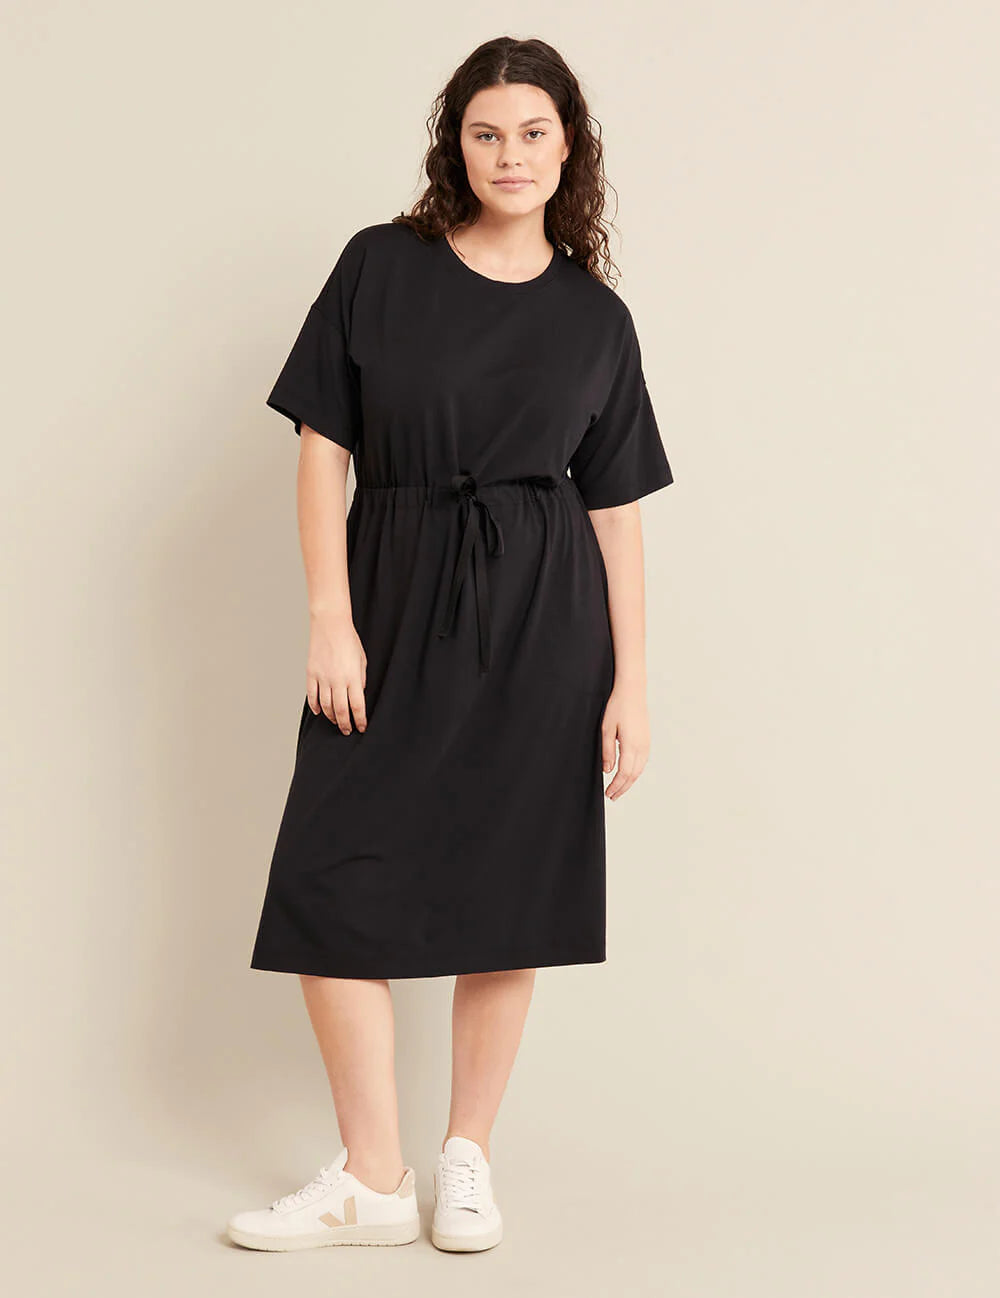 Buy Rigo Black Cotton T Shirt Dress - Dresses for Women 6911332